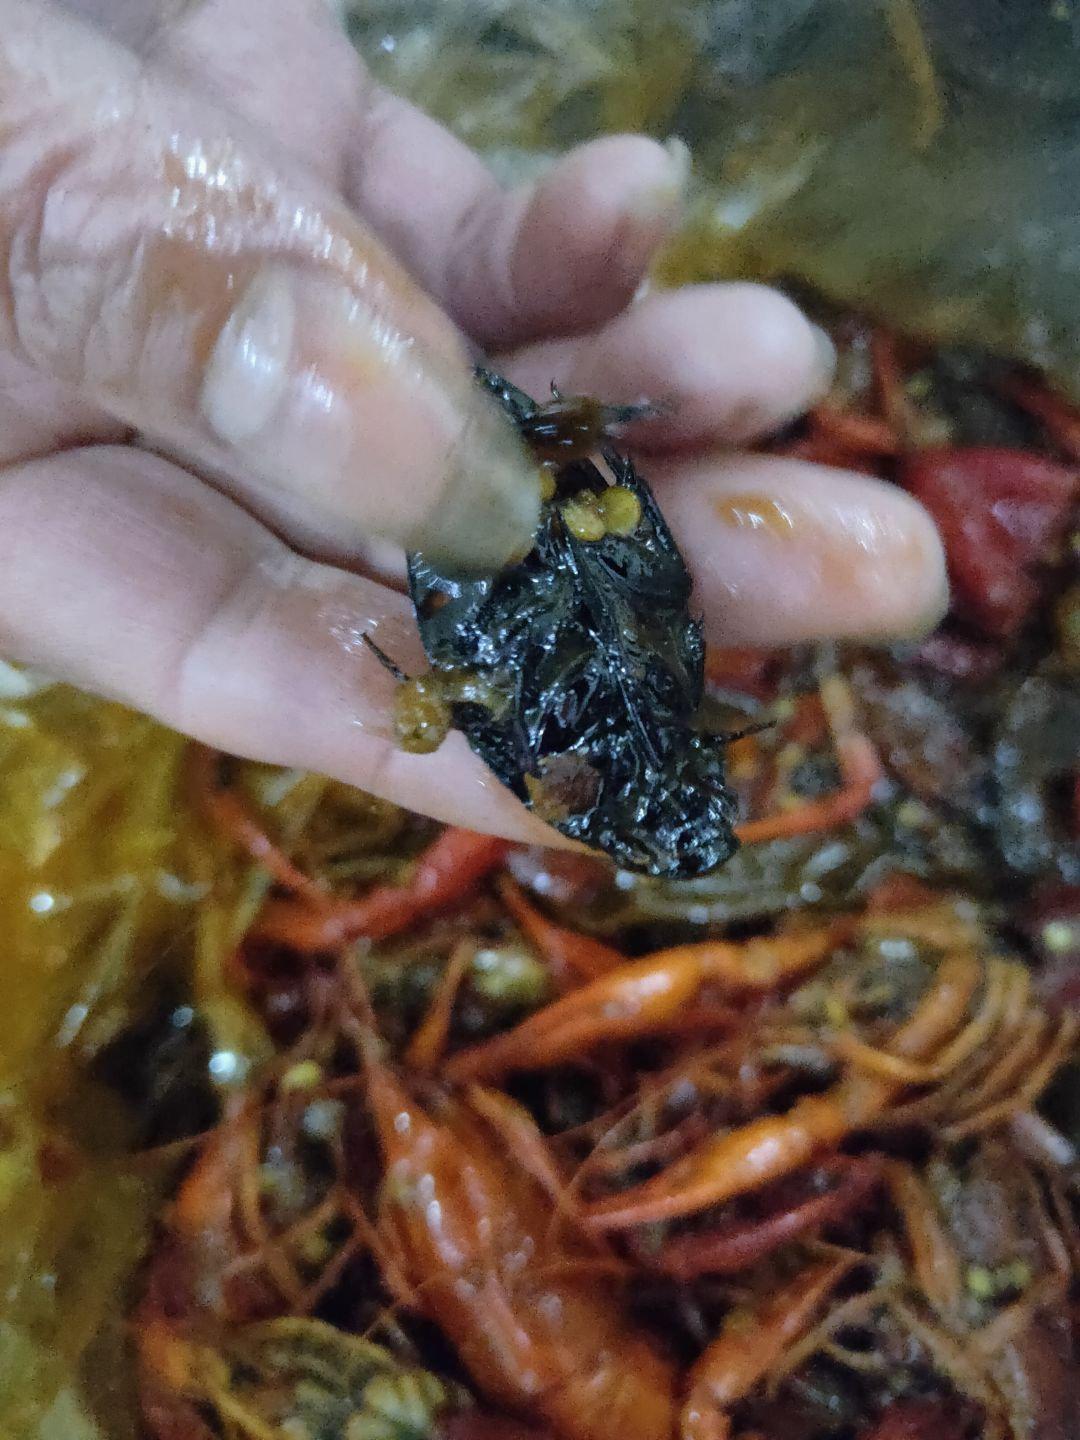 网友:打包的小龙虾里面吃出个黑色大虫子?